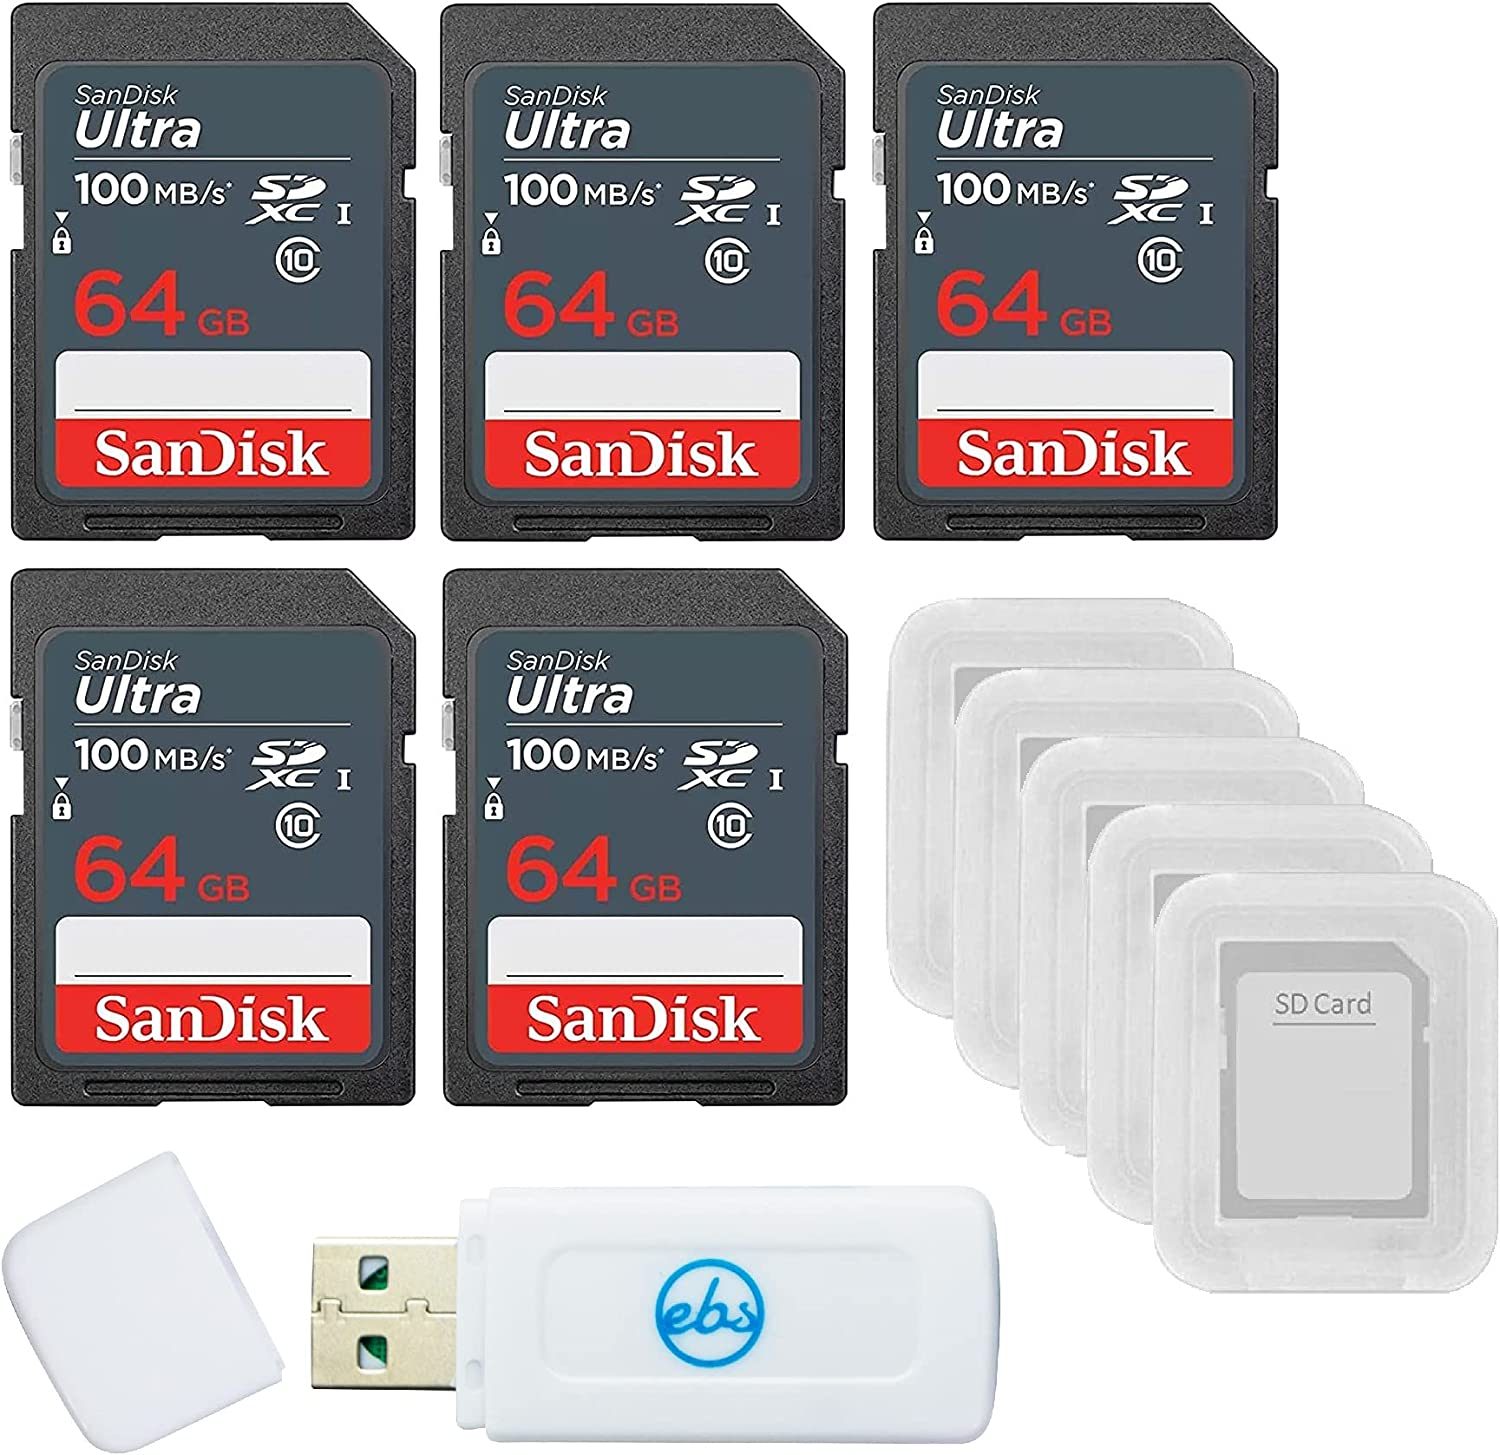 샌디스크 64GB 울트라 SD 메모리 카드 5팩 SDXC UHS-I Class 10 (SDSDUNR-064G-GN3)IN) 5개의 SD 카드 케이스와 1개의 Stromboli 카드 리더를 제외한 모든 것이 포함된 번들